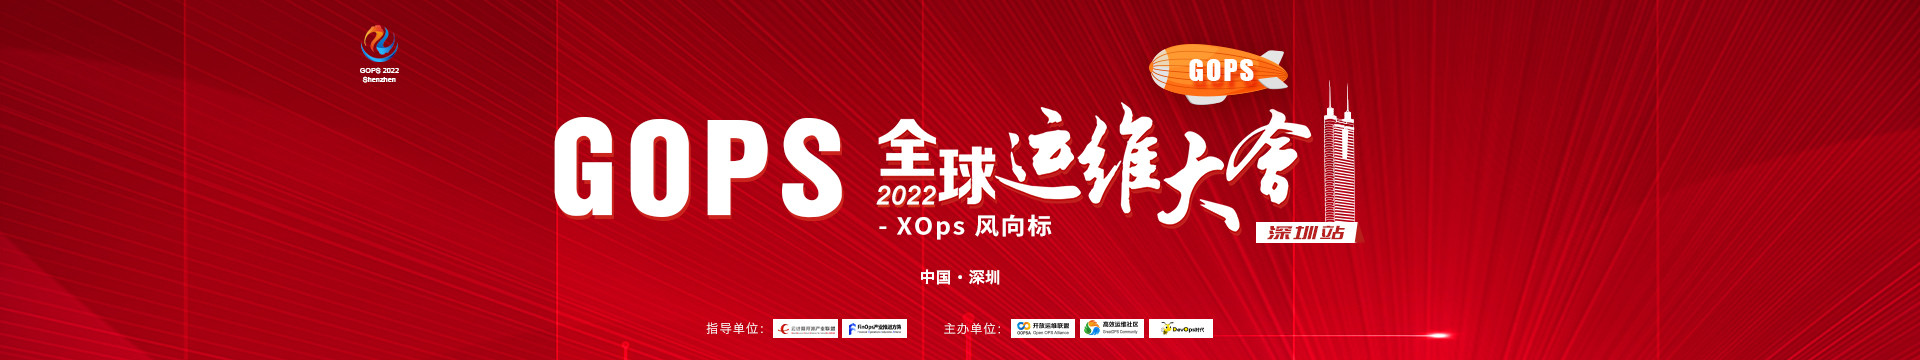 2022GOPS全球運維大會深圳站--下一代XOps浪潮